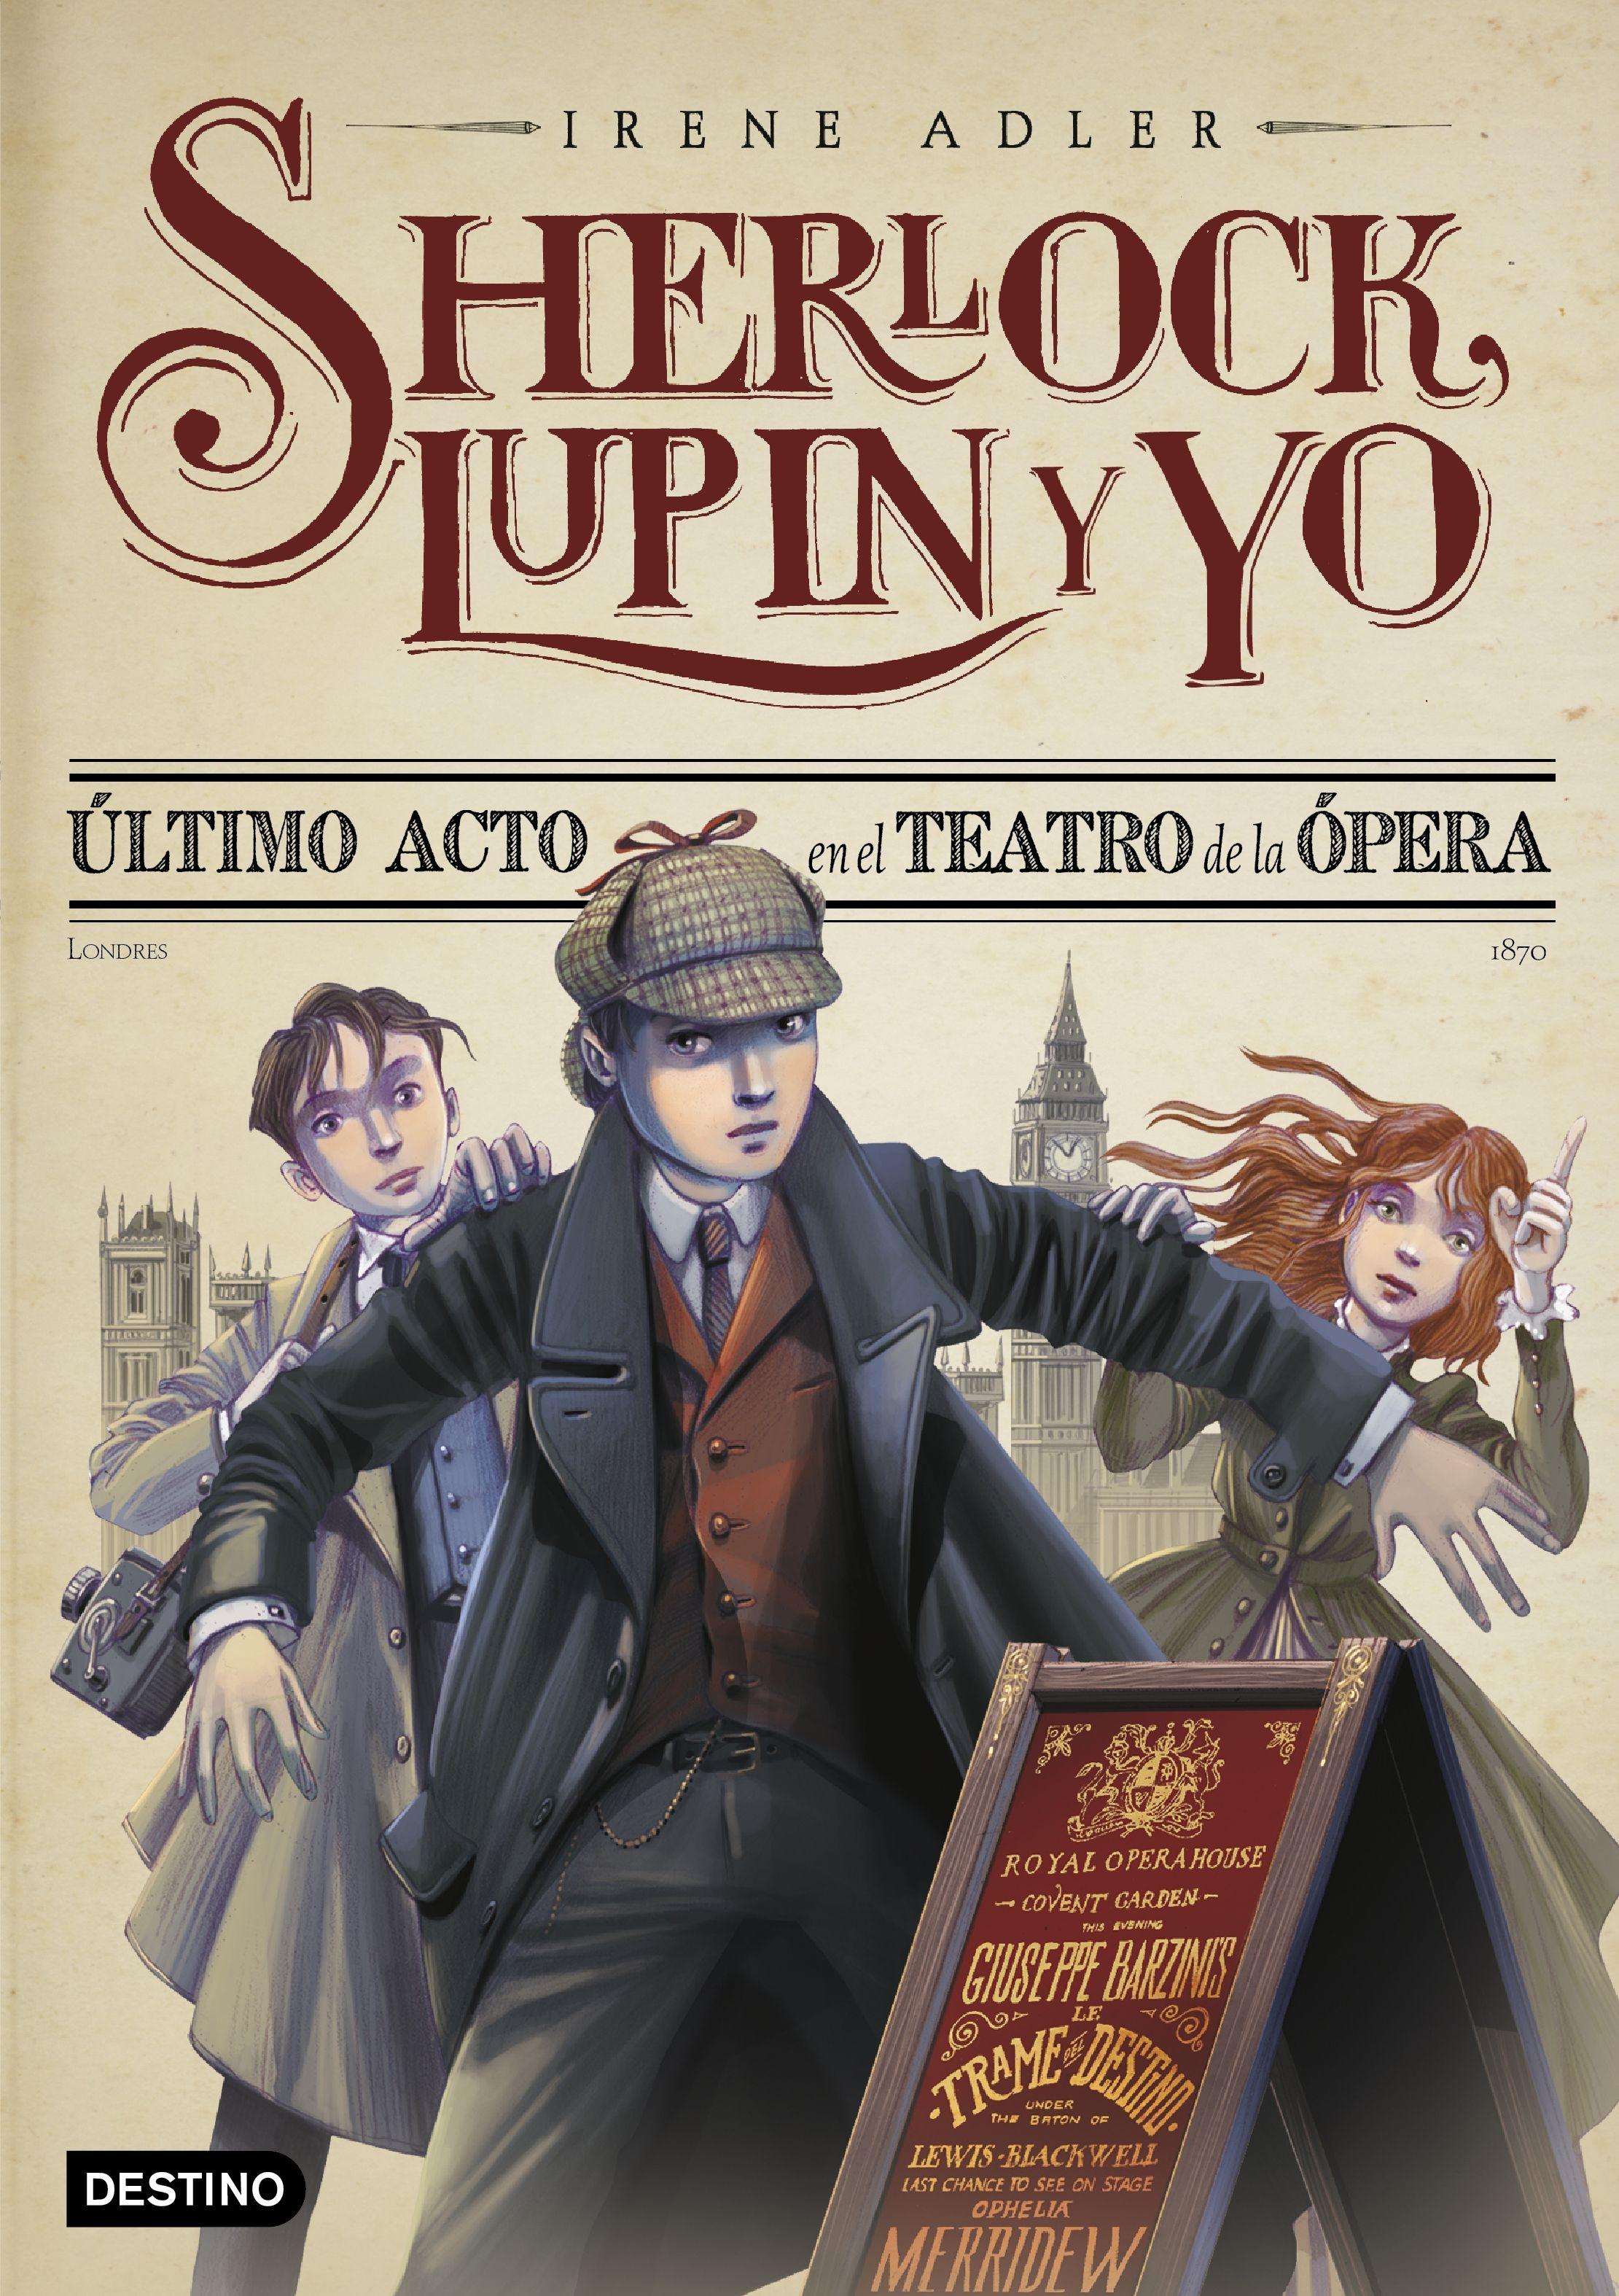 Último Acto en el Teatro de la Ópera. Nueva Presentación "Sherlock, Lupin y yo 2". 